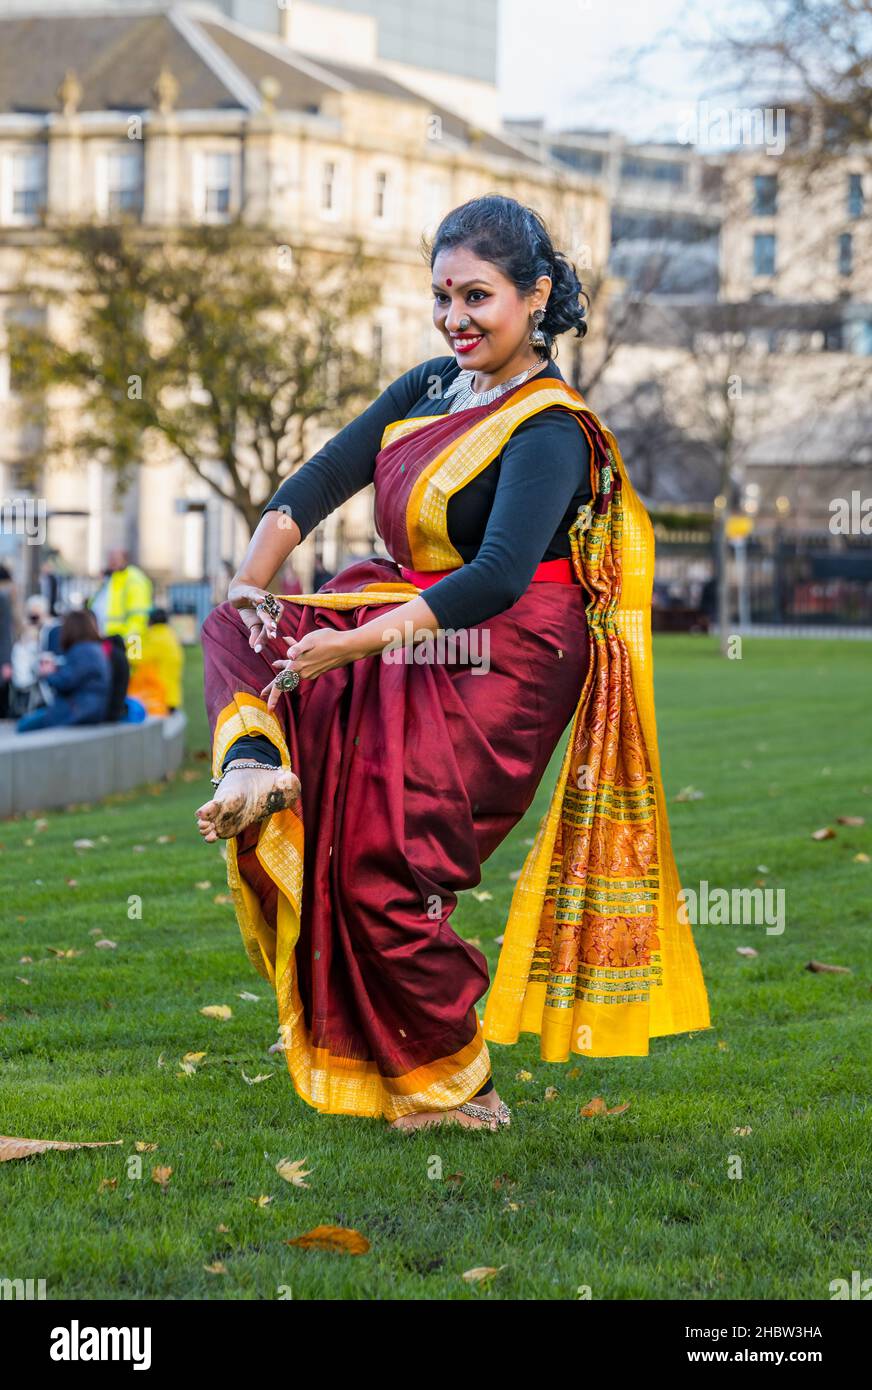 Danseuse indienne posant, festival Diwali, Édimbourg, Écosse, Royaume-Uni Banque D'Images